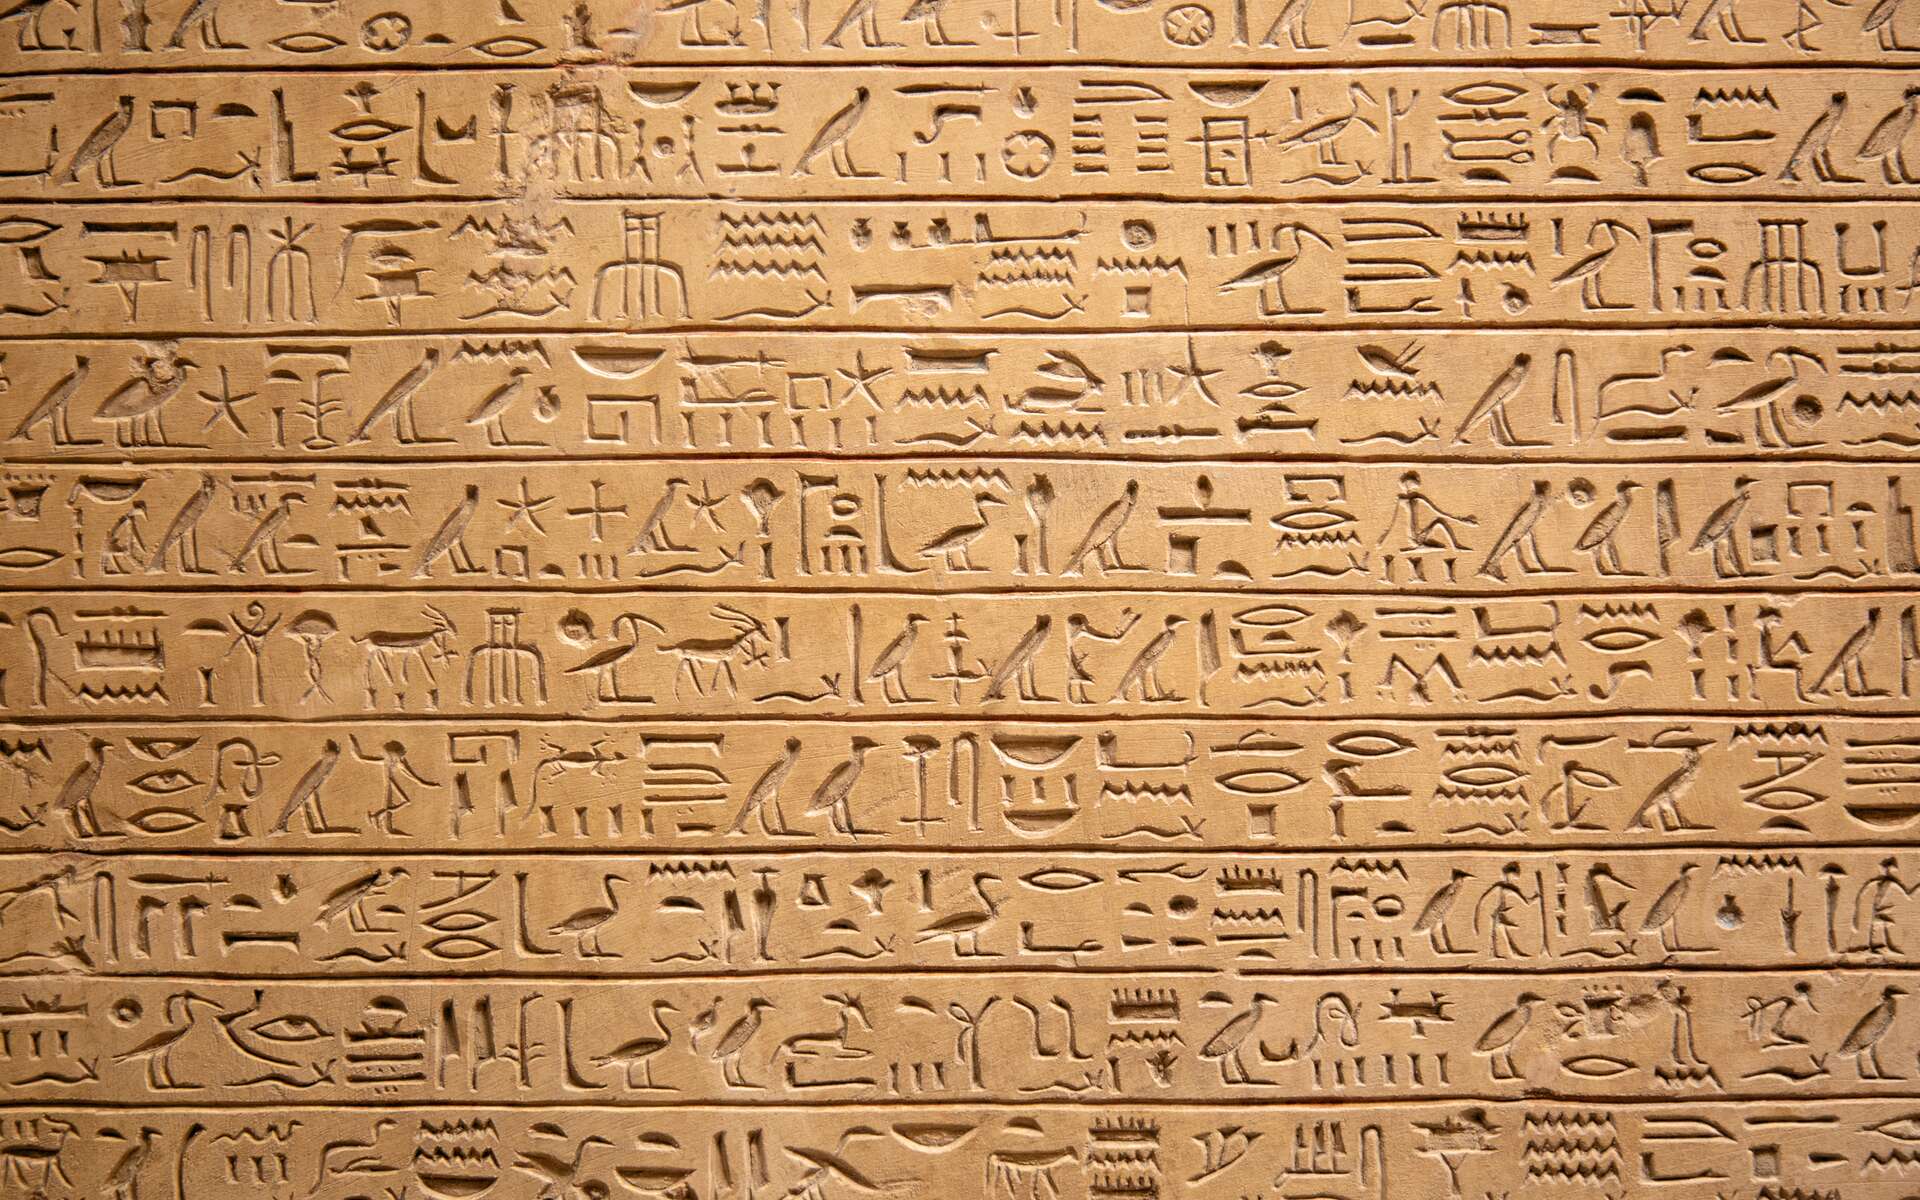 Un papyrus du Livre des Morts de 16 m de long découvert à Saqqarah